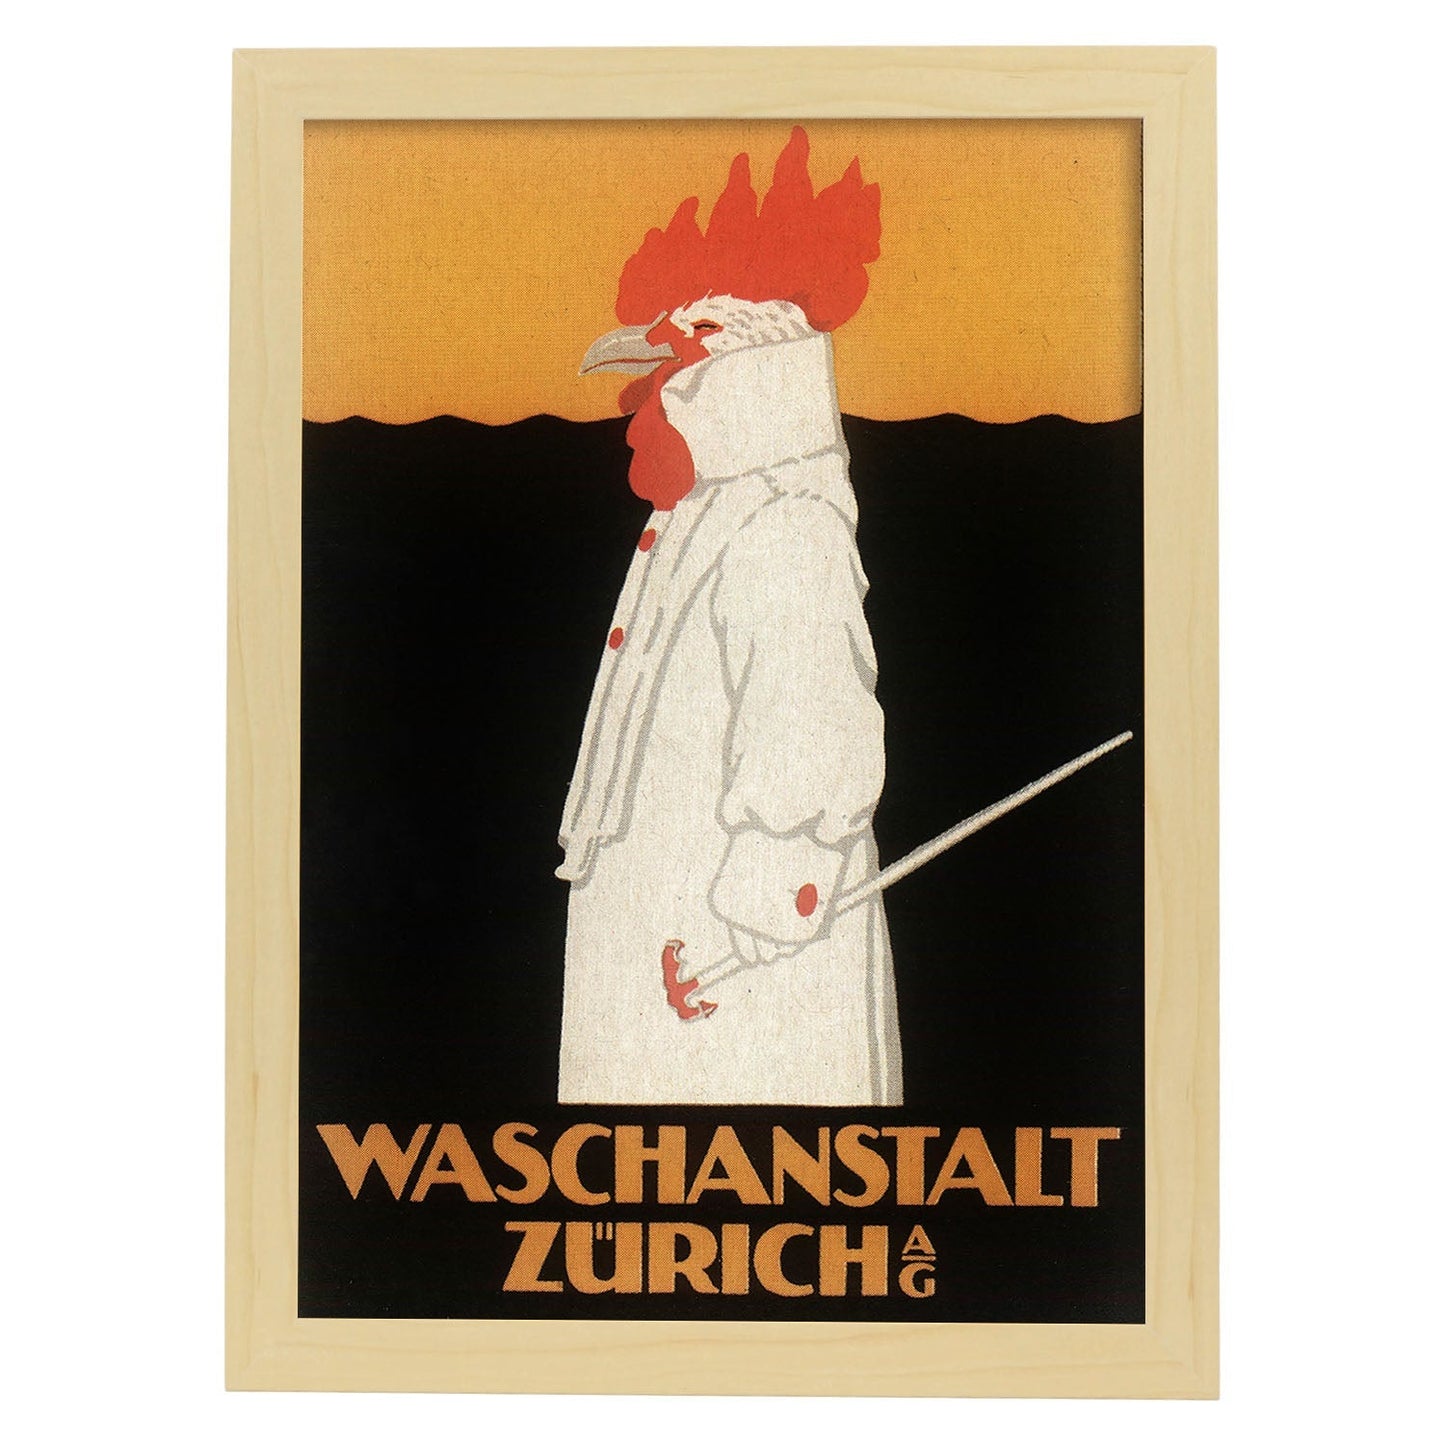 Poster vintage. Anuncio vintage Waschanstalt Zurich de 1905.-Artwork-Nacnic-A4-Marco Madera clara-Nacnic Estudio SL